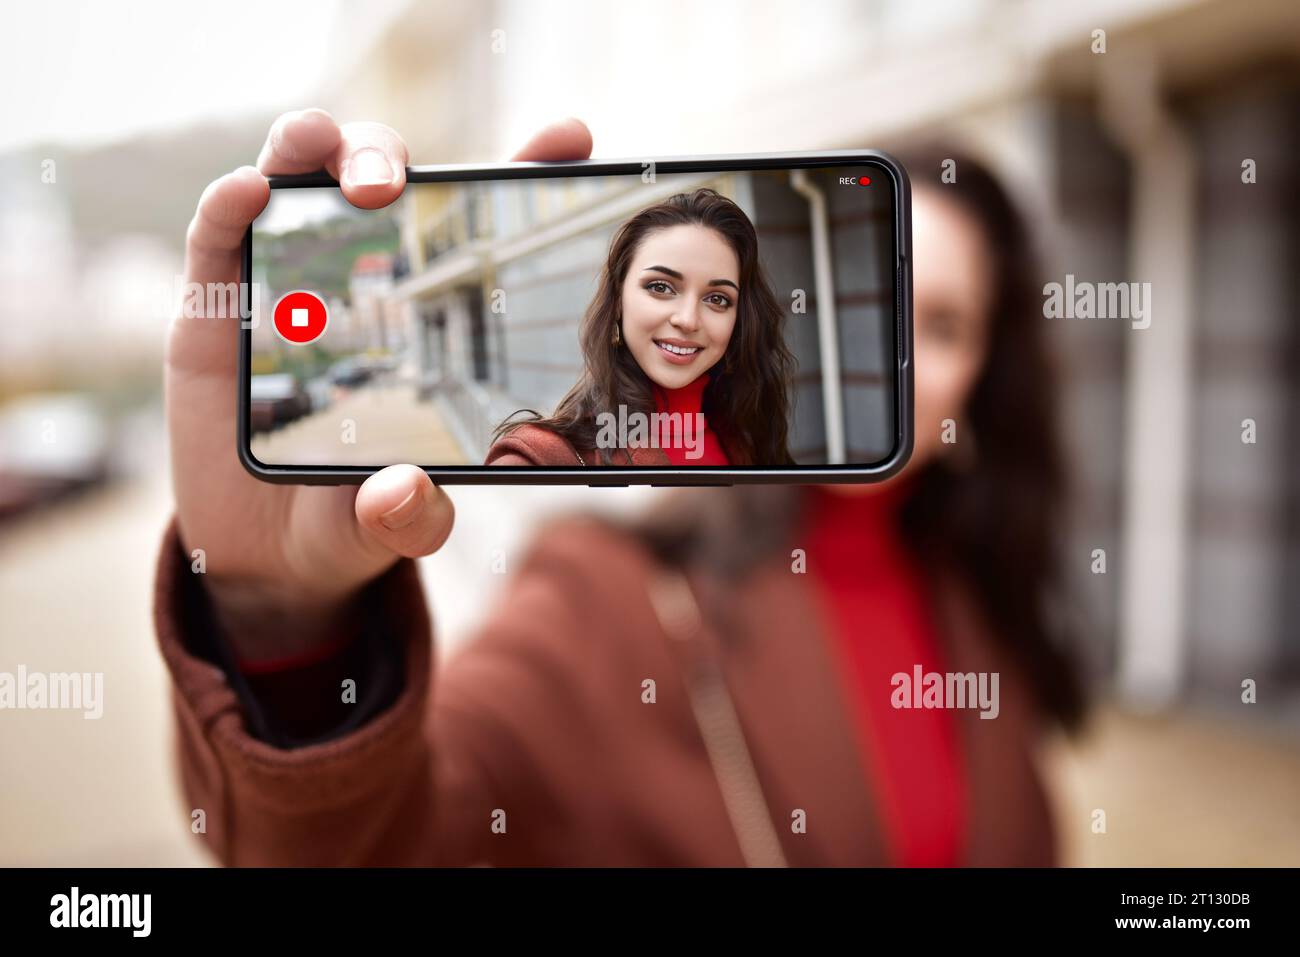 Una mujer joven en la calle está blogueando en video en su teléfono, su imagen visible en la pantalla del teléfono. Foto de stock